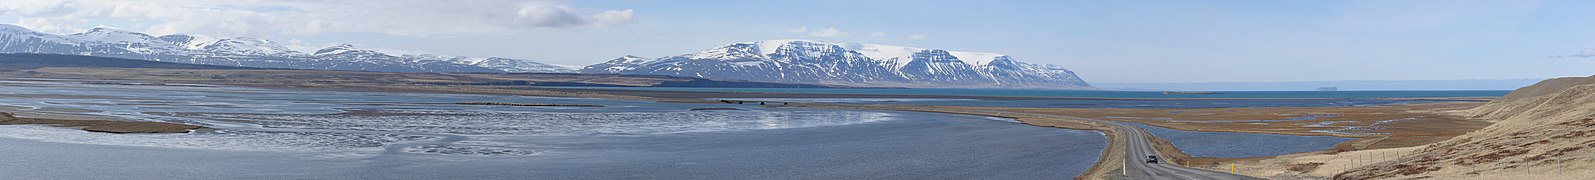 Skargarfjörður desde la ruta 75